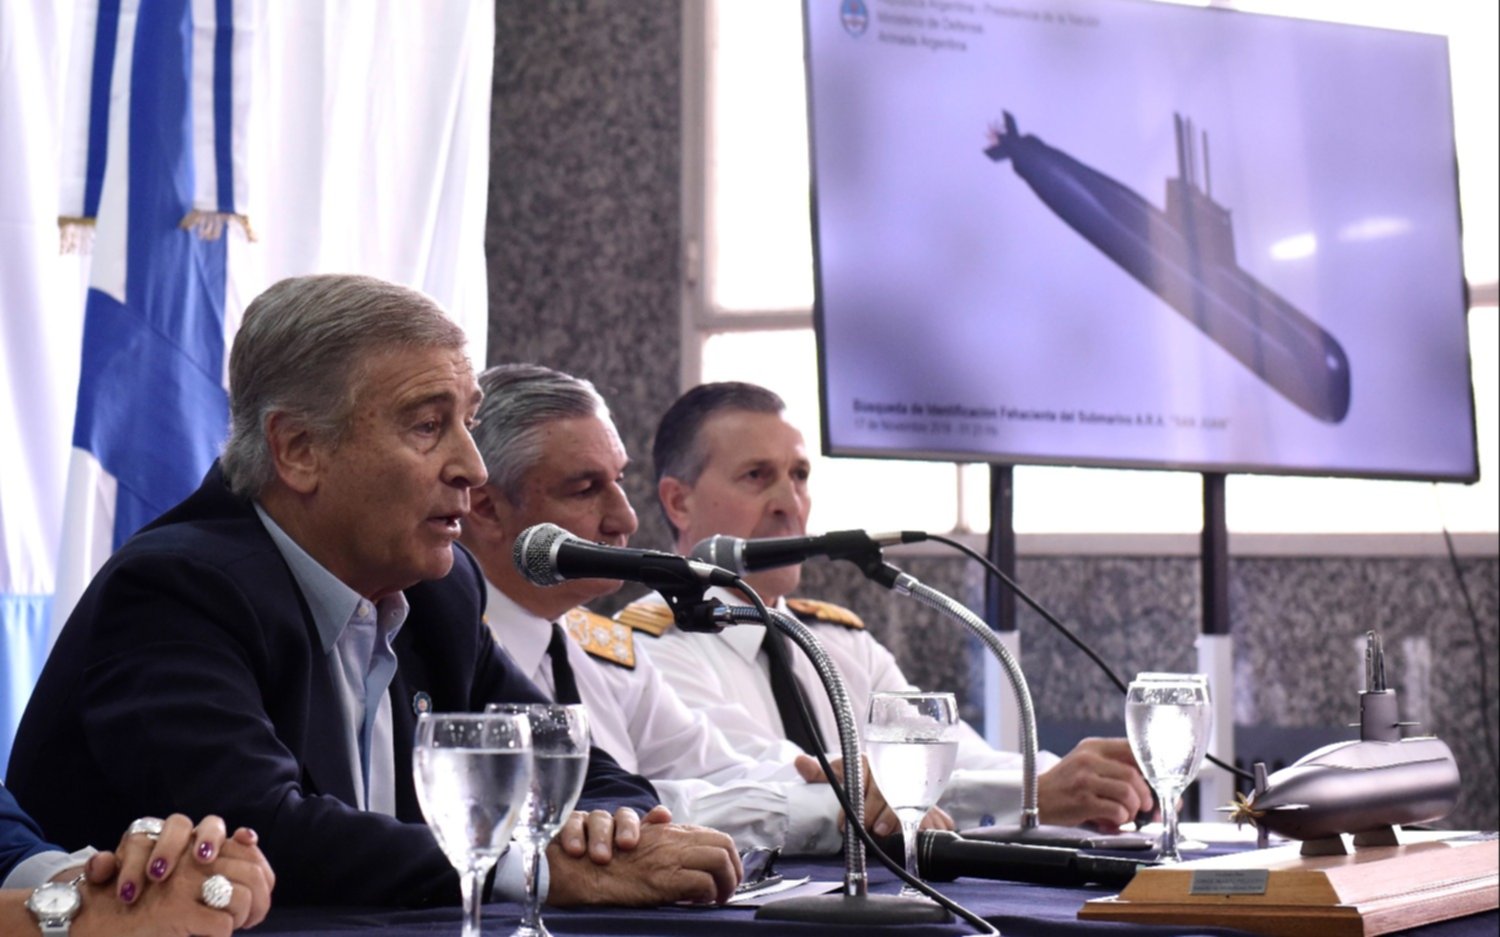 El Gobierno afirmó que evaluará las posibilidades para reflotar al ARA San Juan